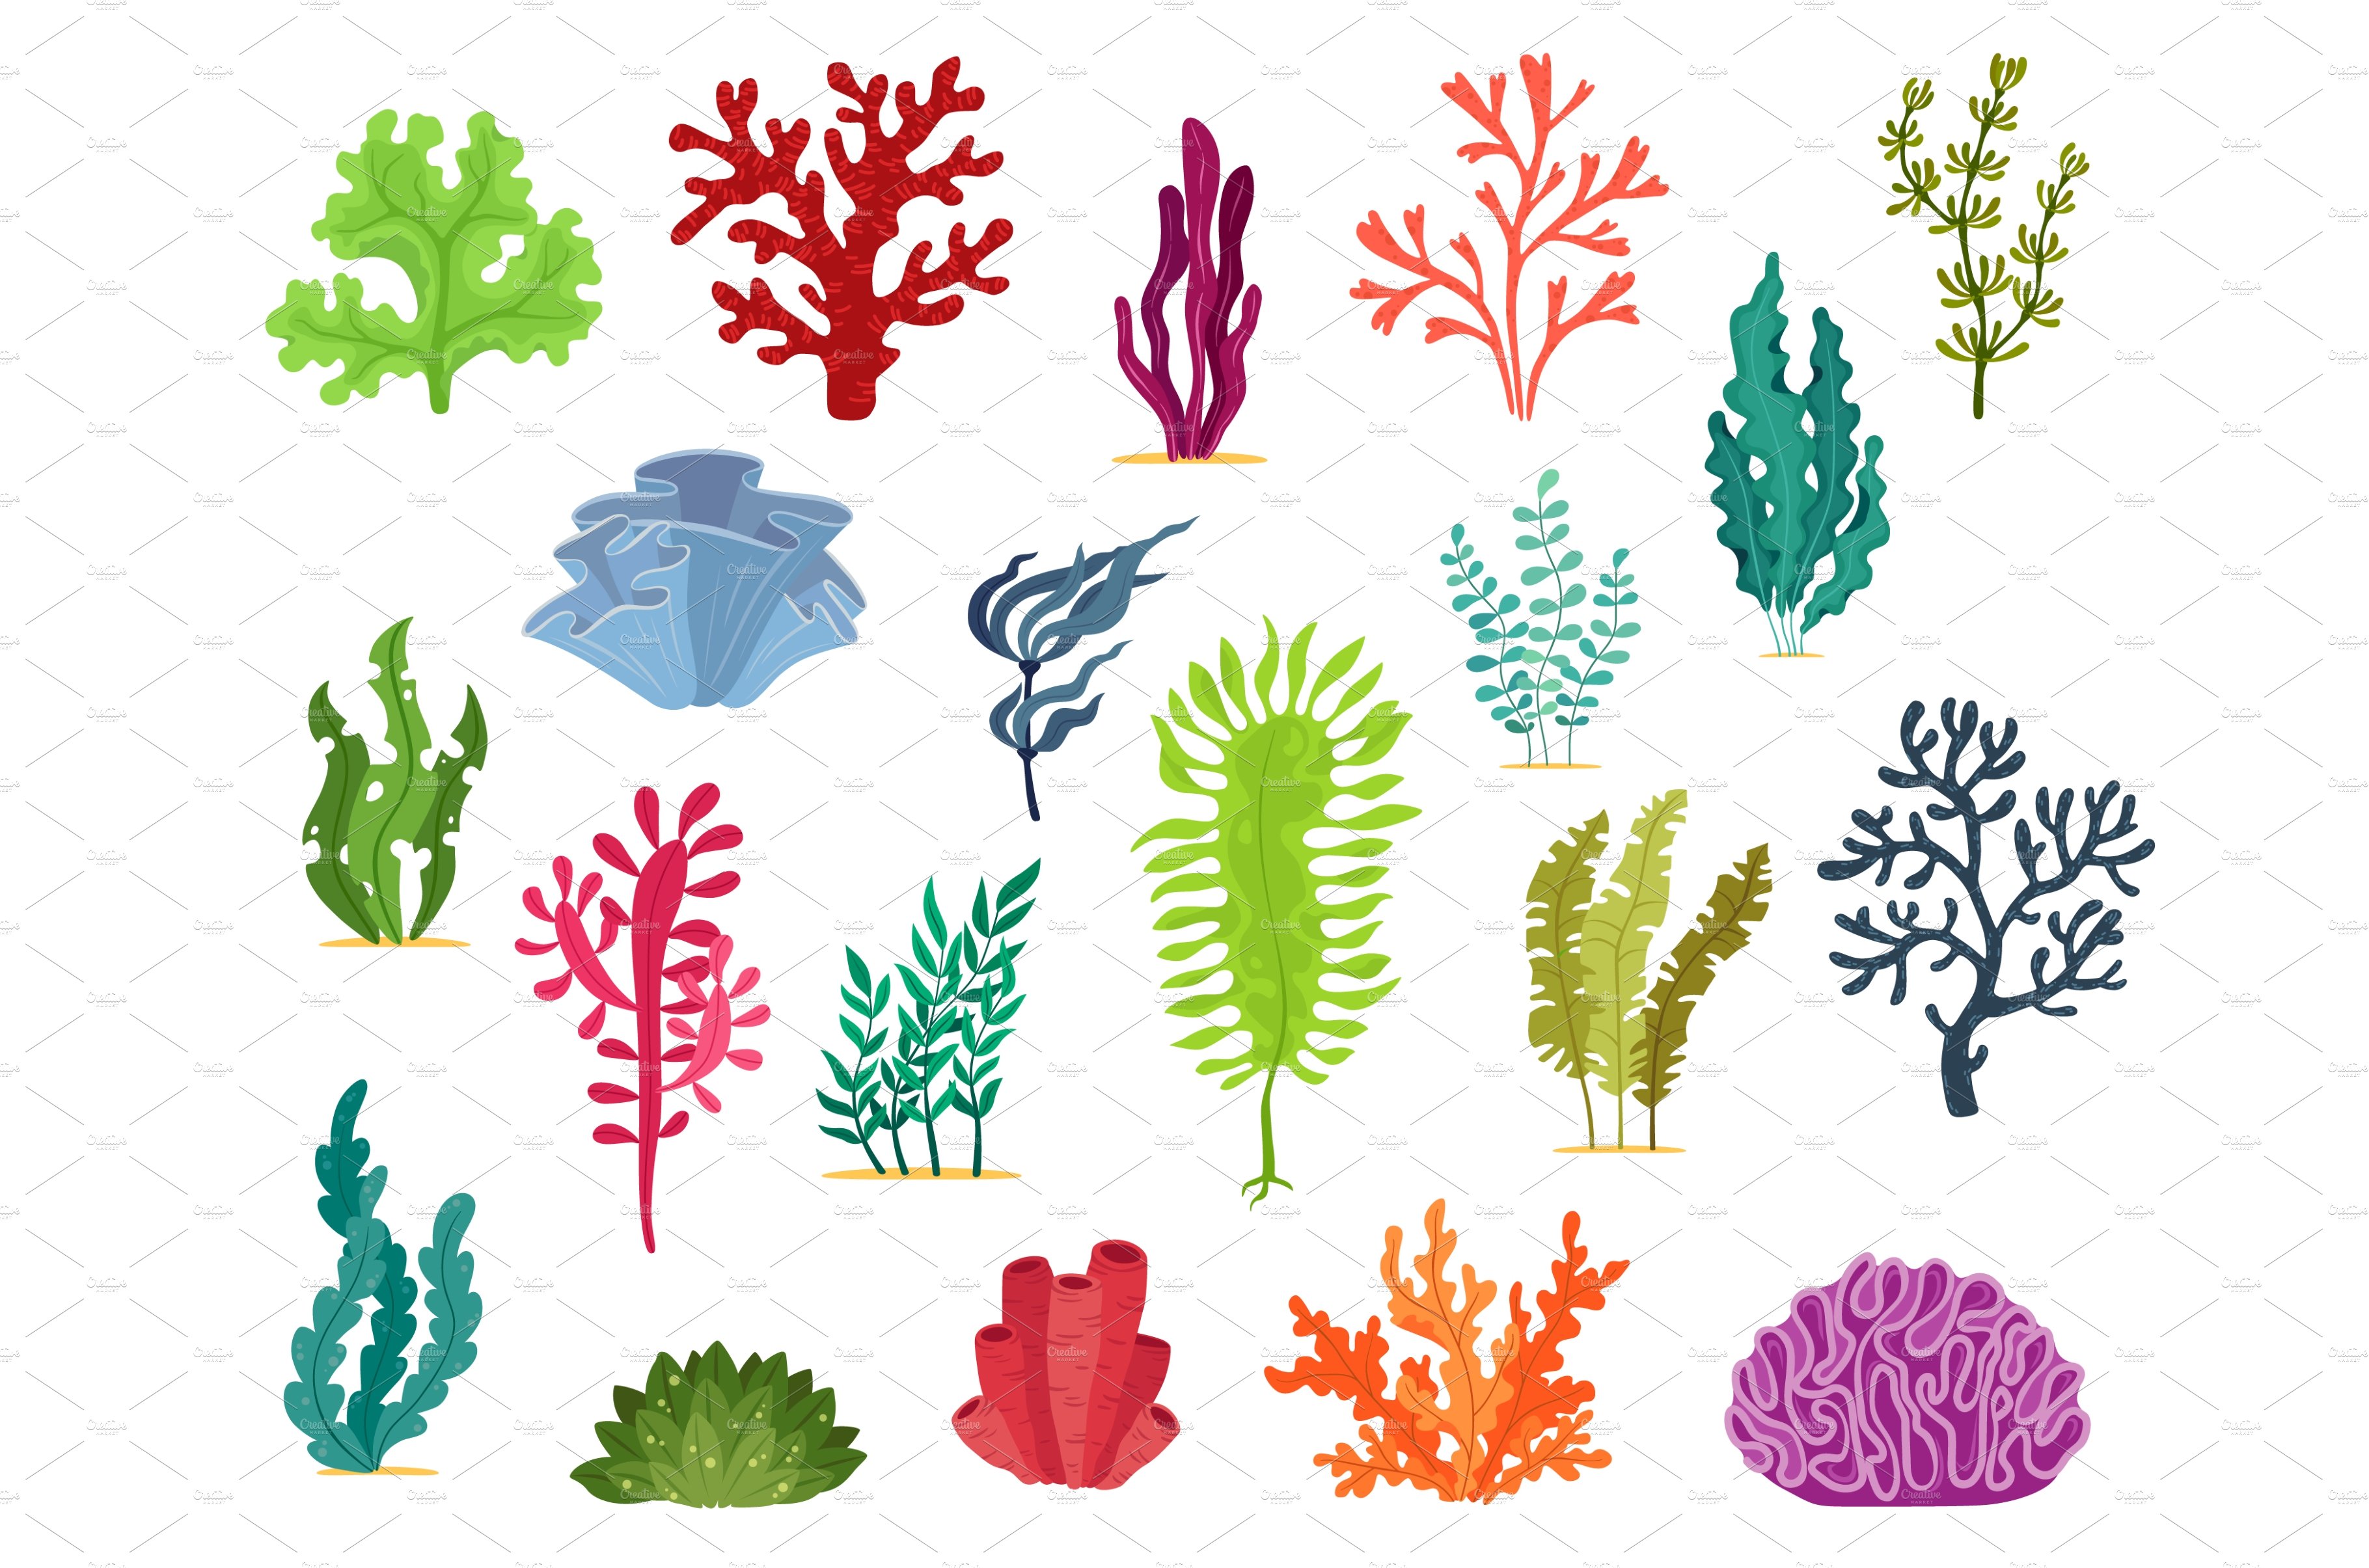 Underwater seaweed plants, algae cover image.